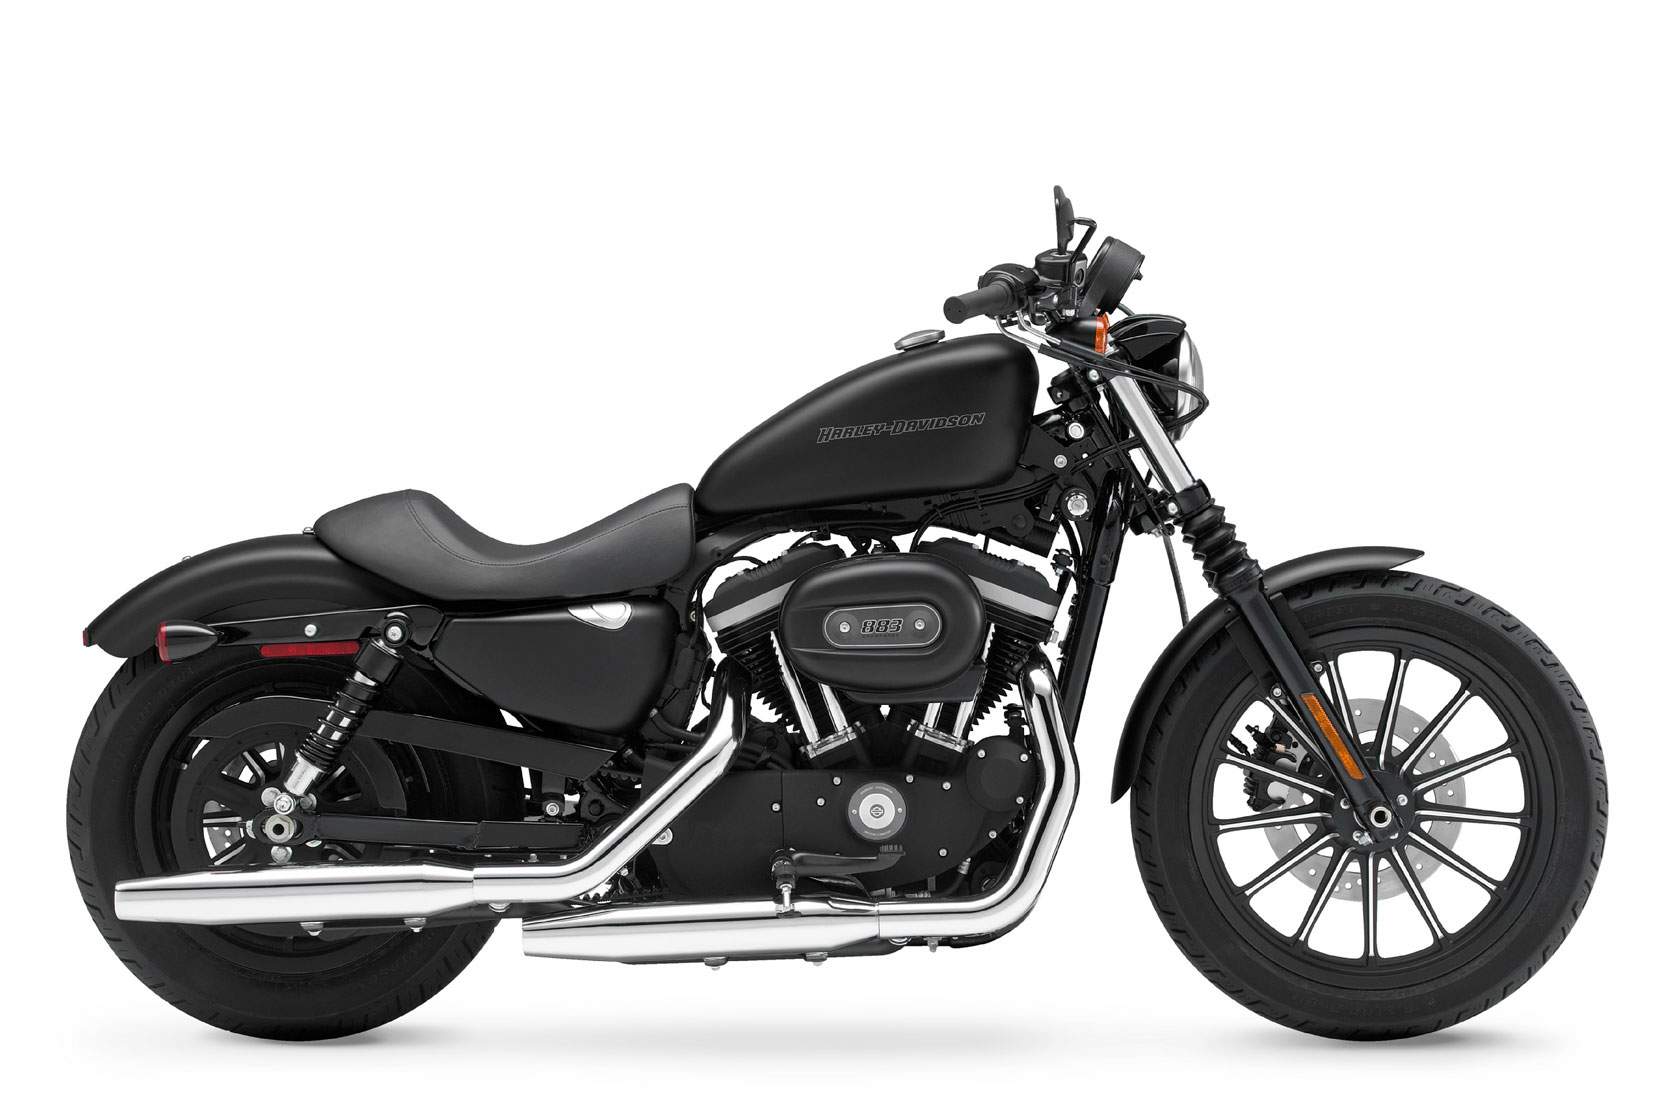 Especificaciones técnicas Harley-Davidson Harley Davidson XL 883N Iron (2011-12)